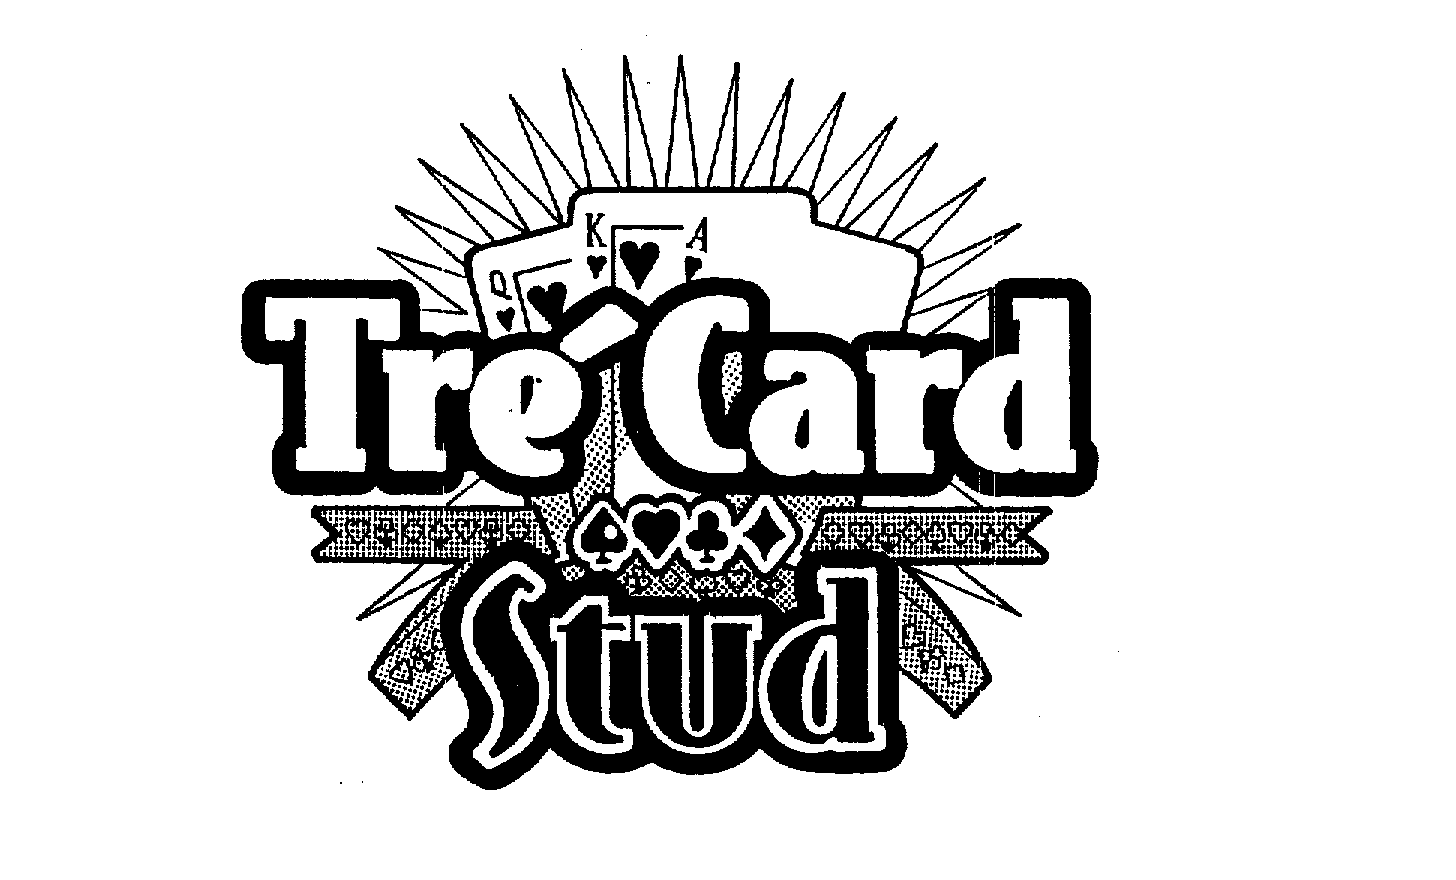  TRE CARD STUD